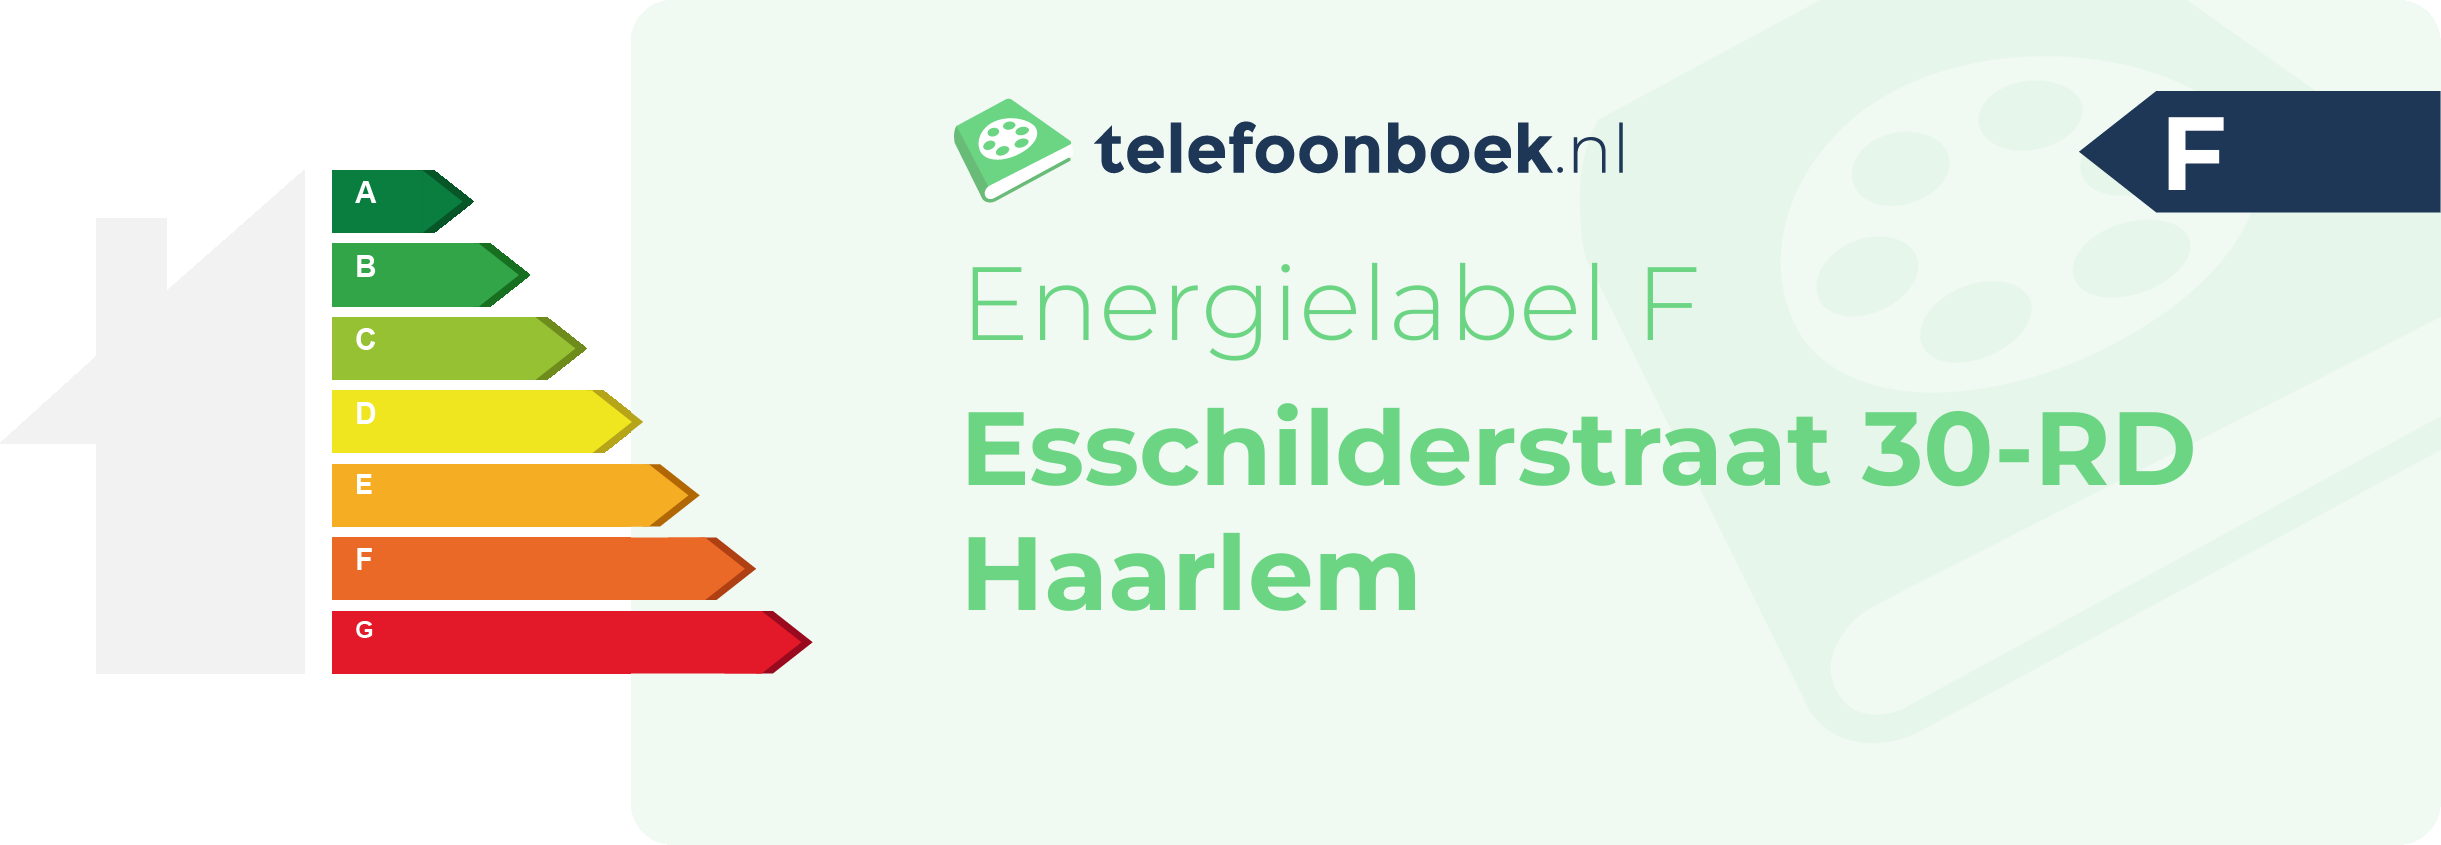 Energielabel Esschilderstraat 30-RD Haarlem